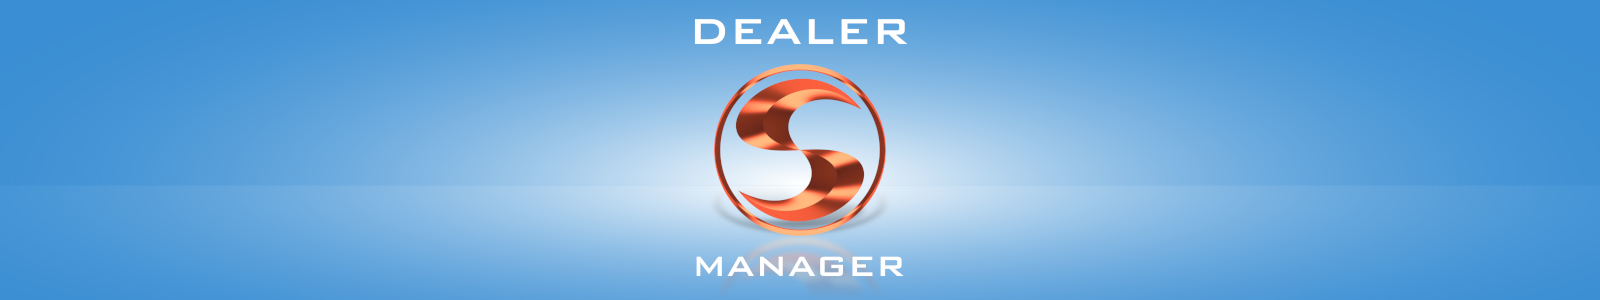 Dealer Manager - program pentru vânzătorii de ferestre și uși